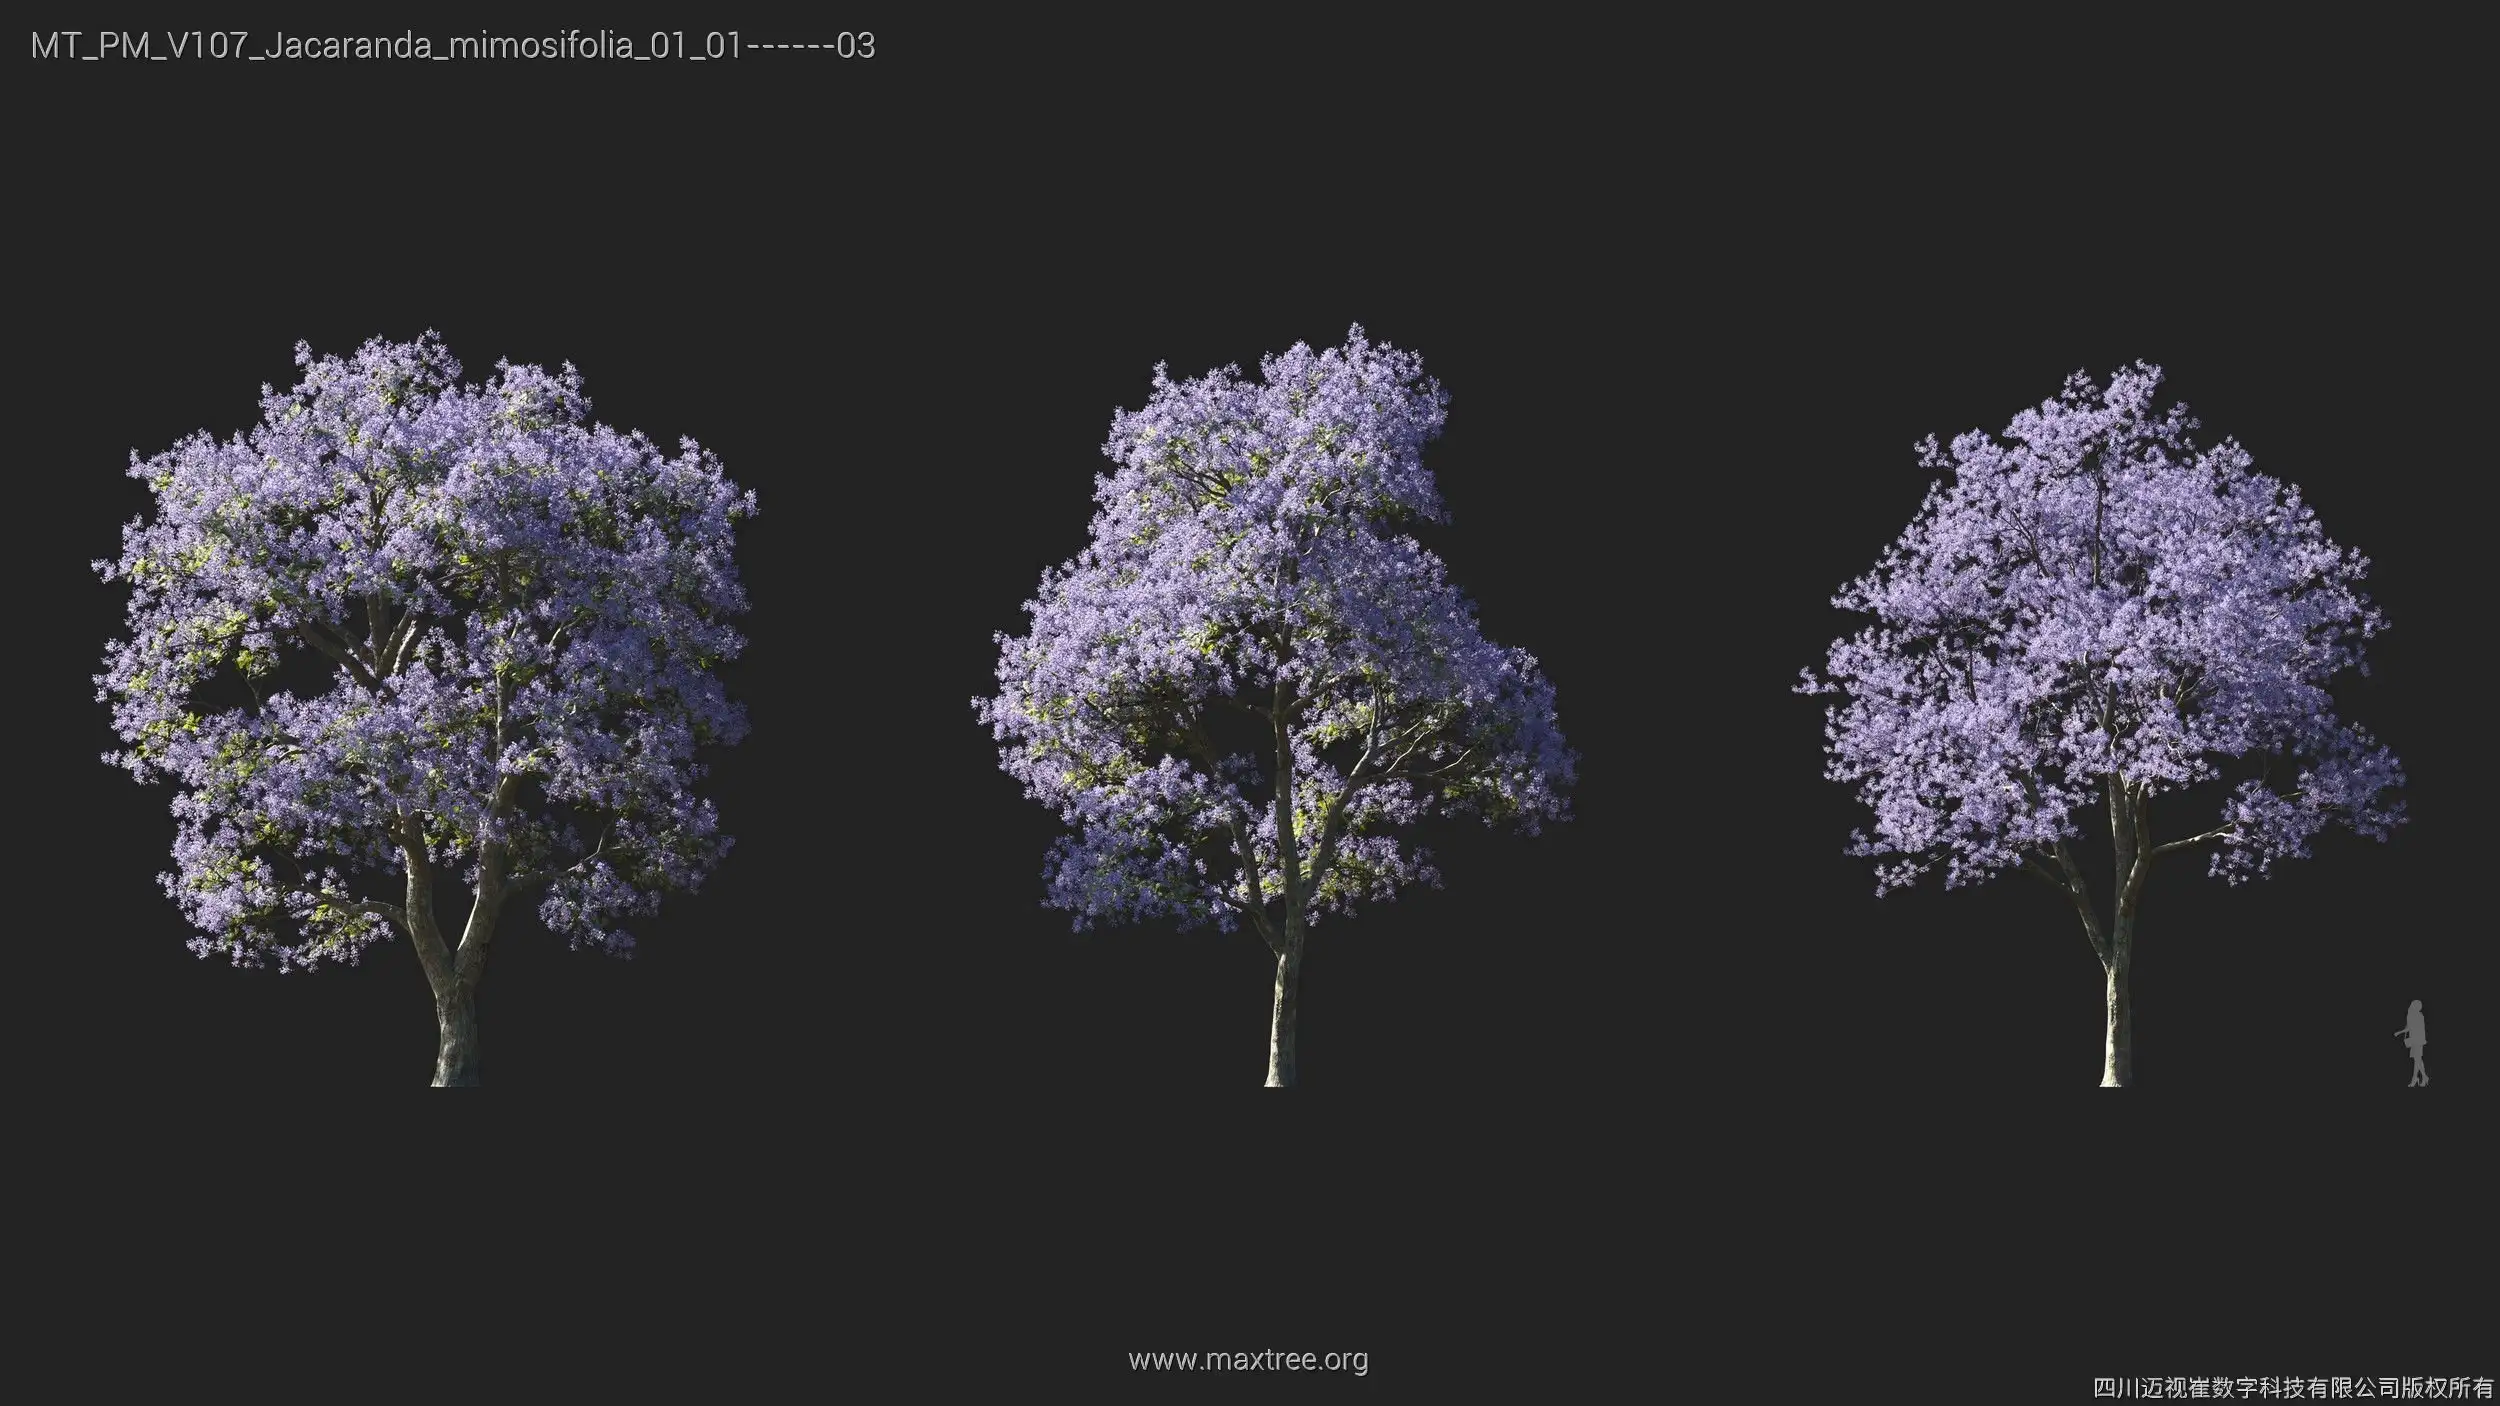 دانلود 72 مدل سه بعدی درخت - 14